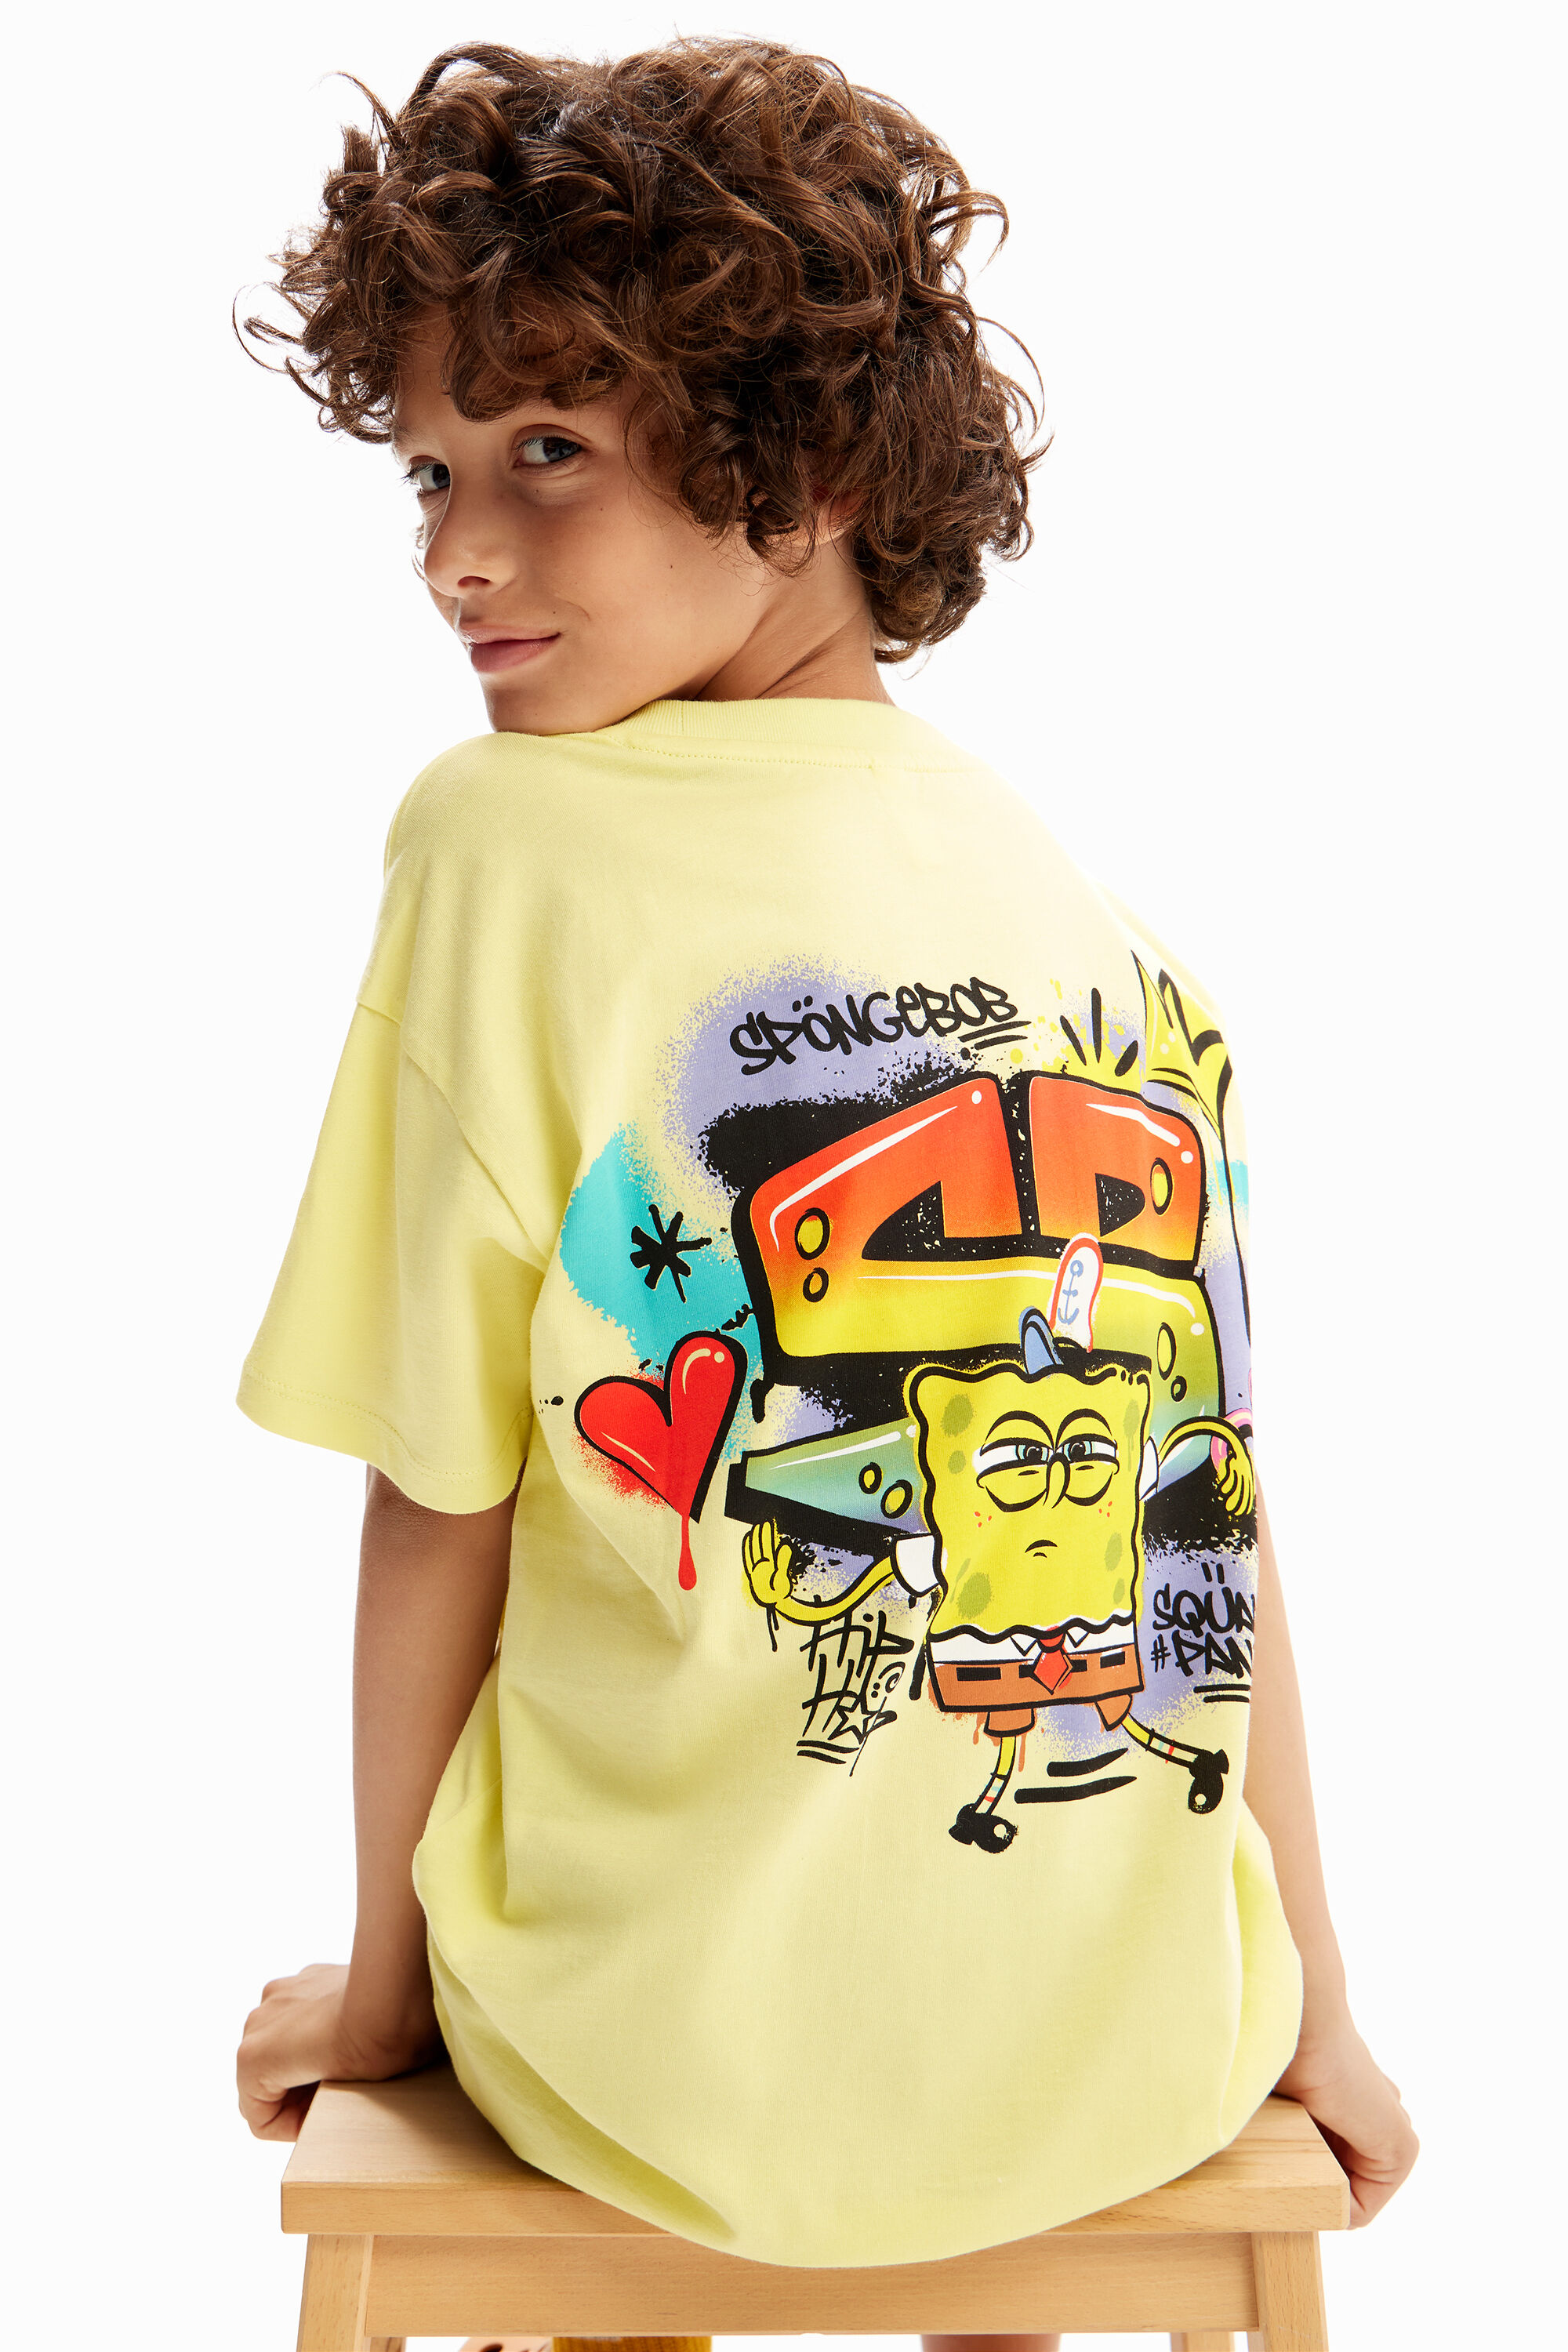 Desigual SpongeBob graffiti T-shirt